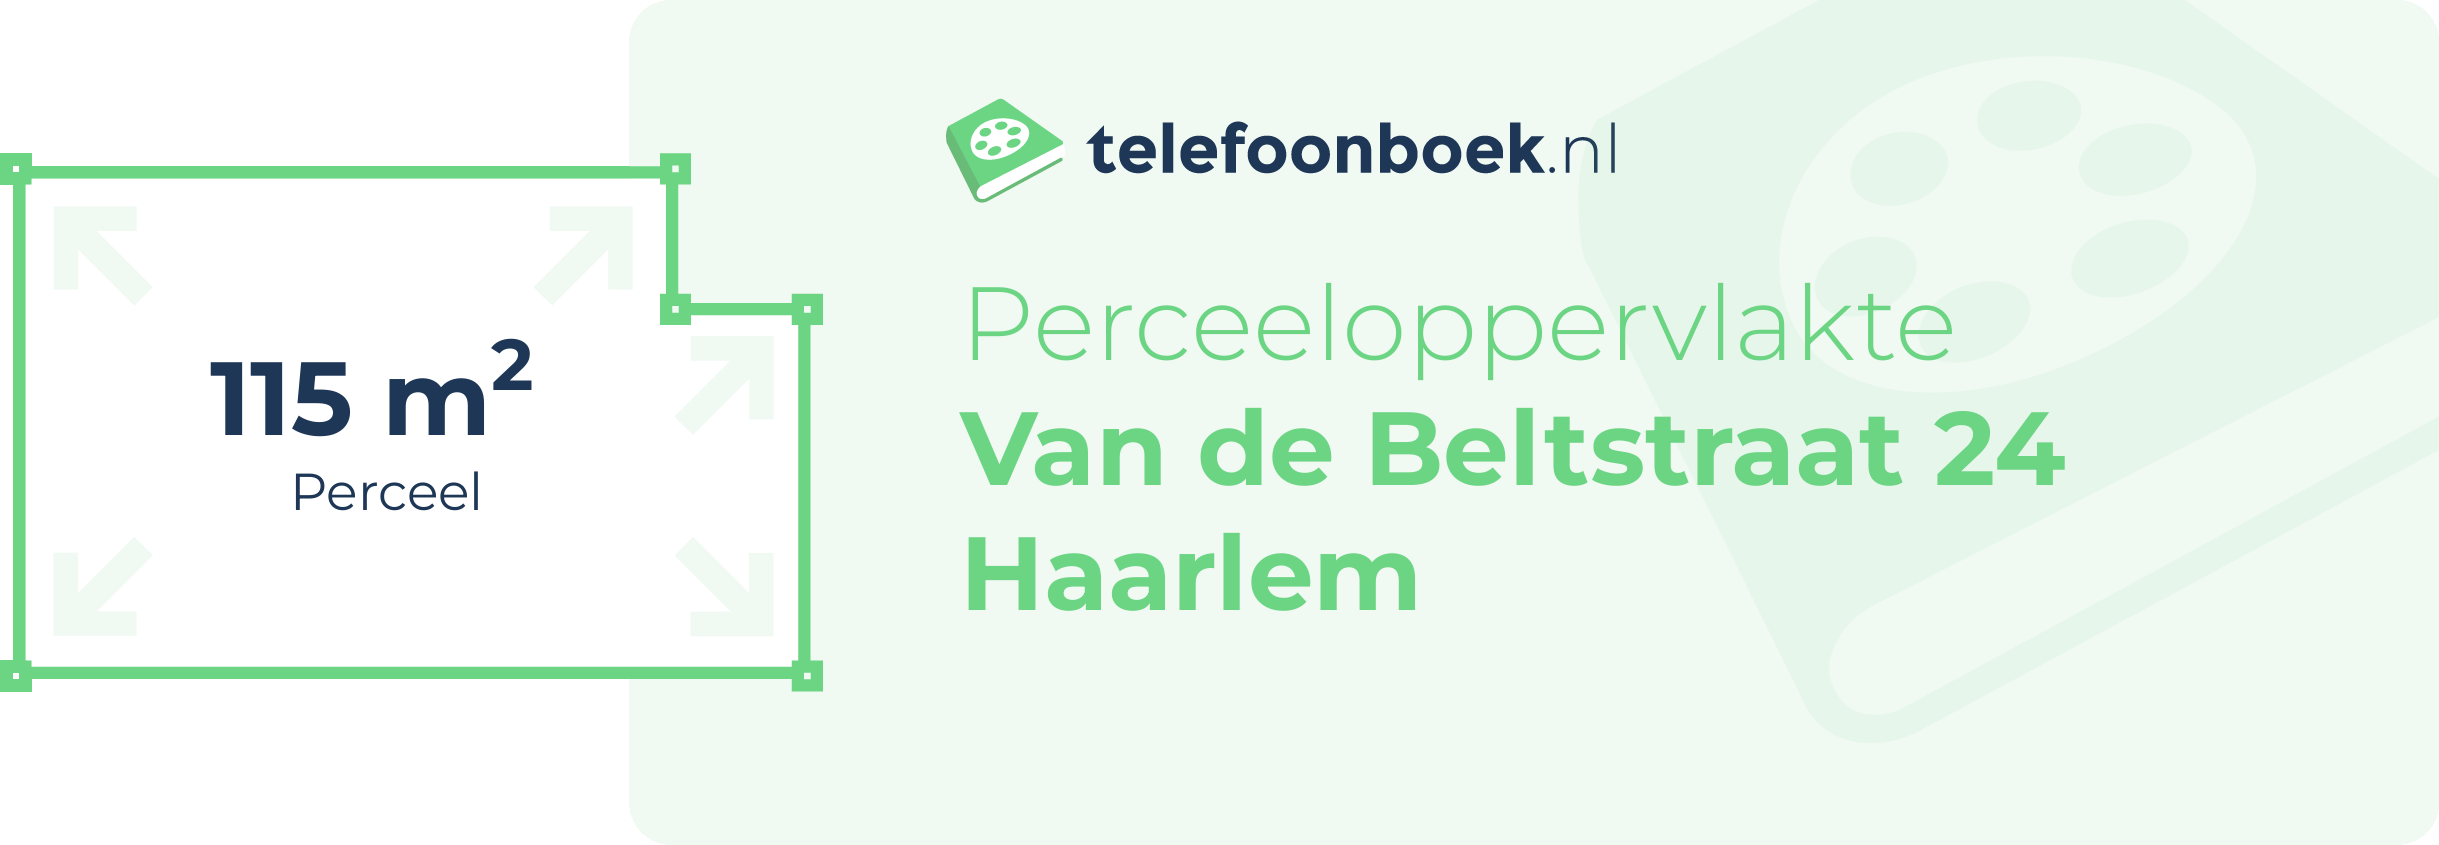 Perceeloppervlakte Van De Beltstraat 24 Haarlem